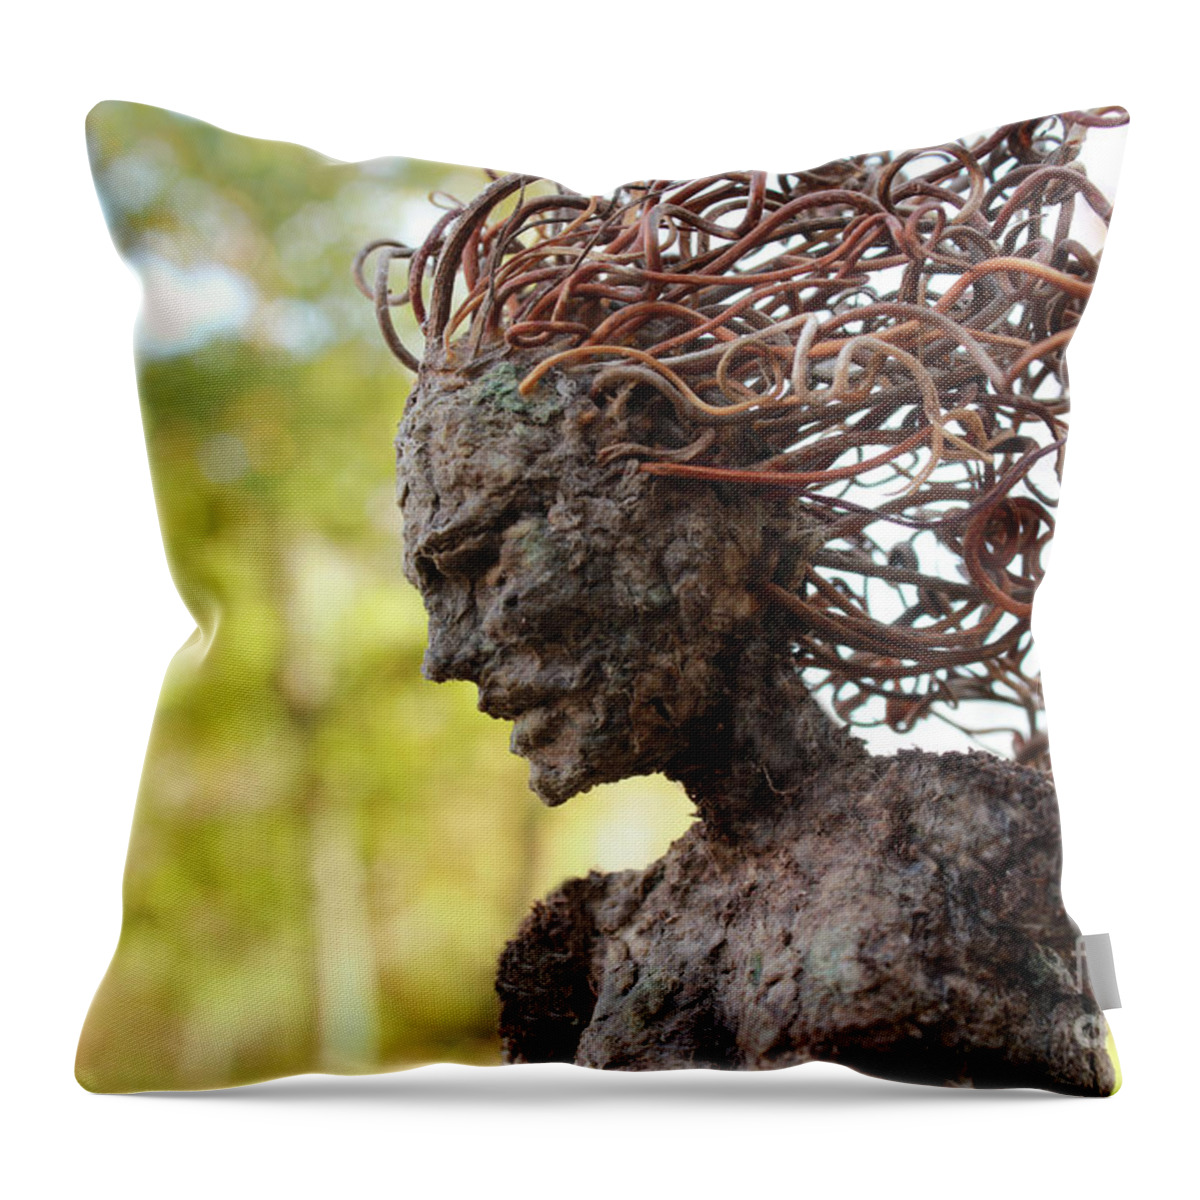 Adam Long Sculpture Throw Pillow featuring the sculpture Watch Me Go video still Autumn scene by Adam Long